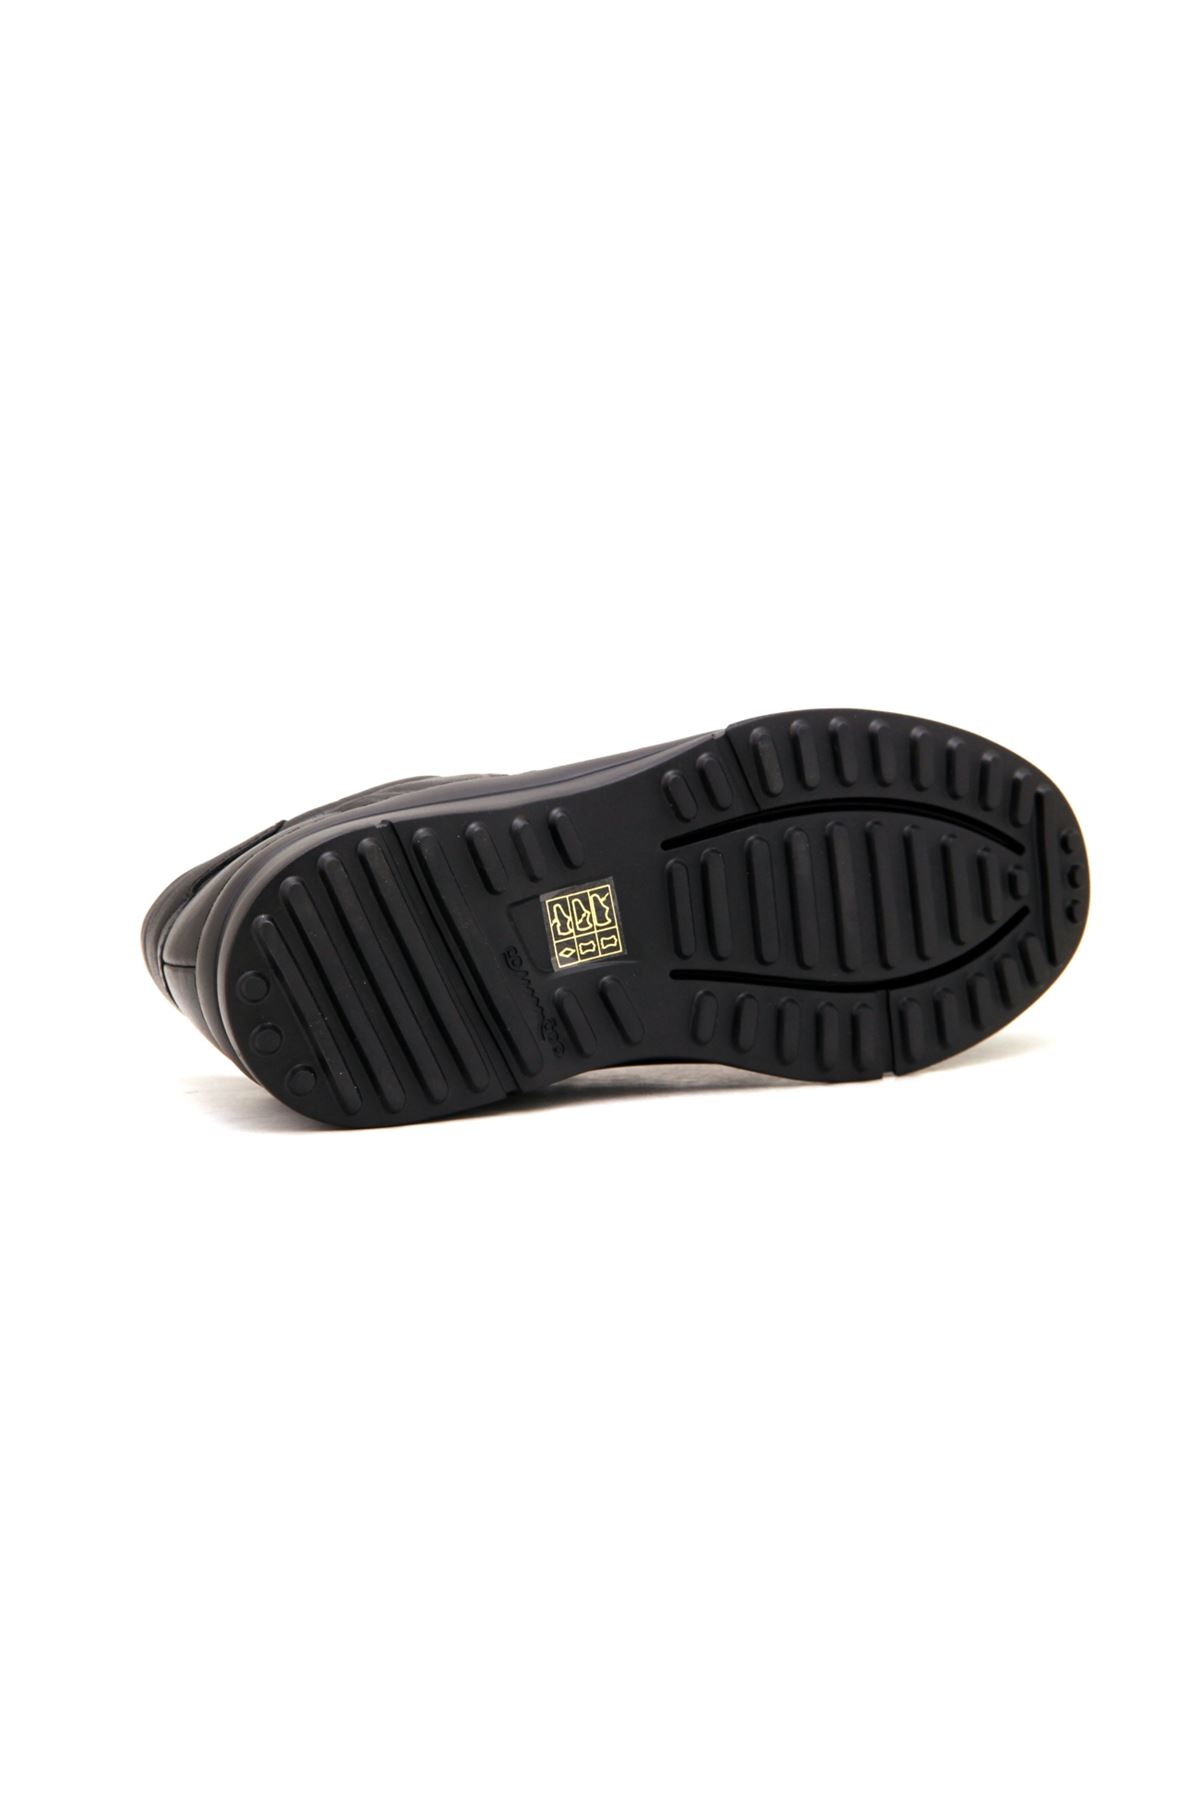 Libero 4506 Hakiki Deri Kadın Ayakkabı - Siyah